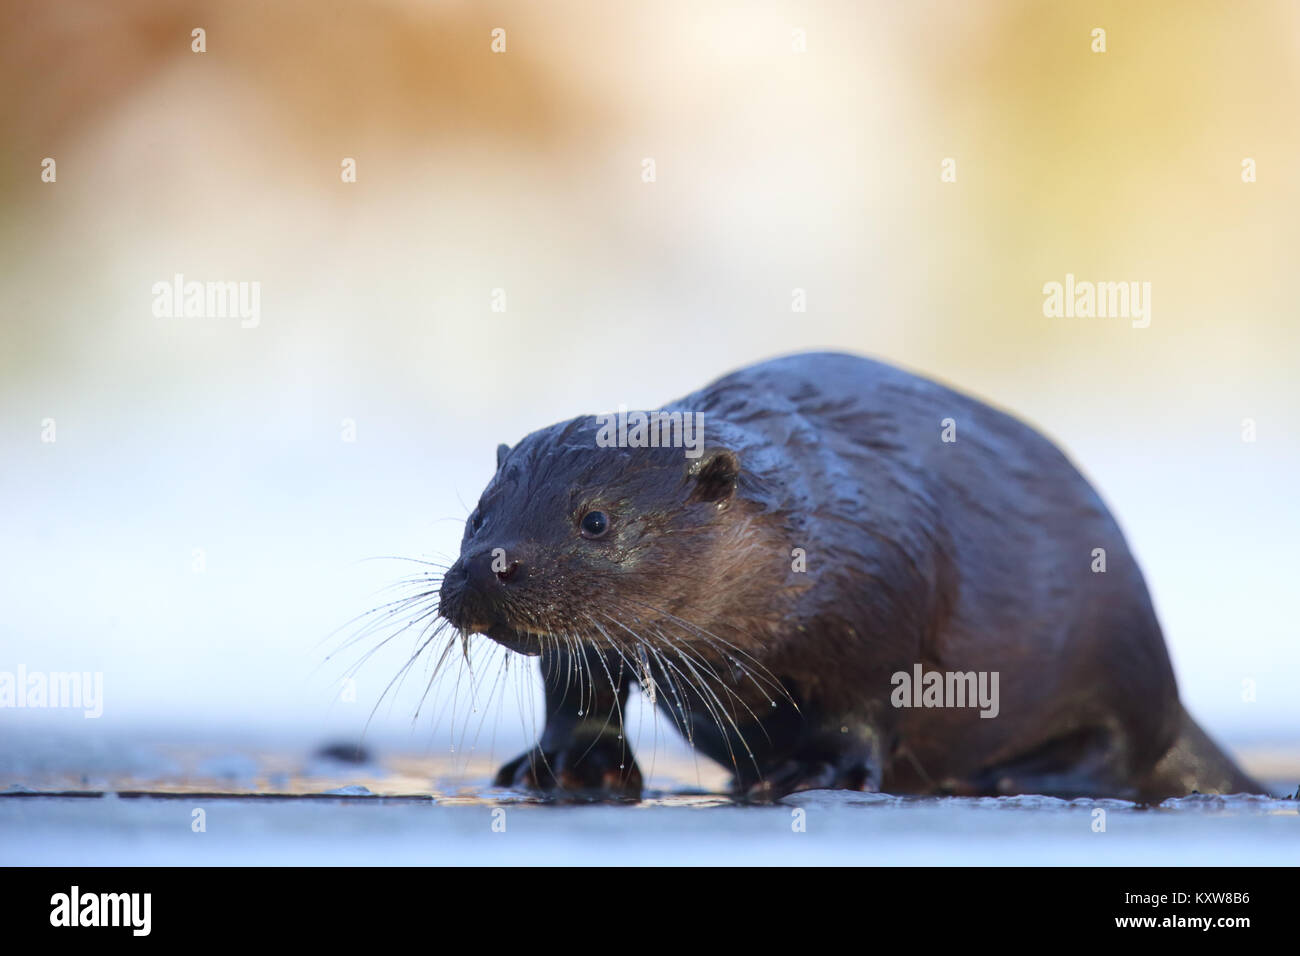 Portrait of wild European otter (Lutra lutra), Europe Stock Photo